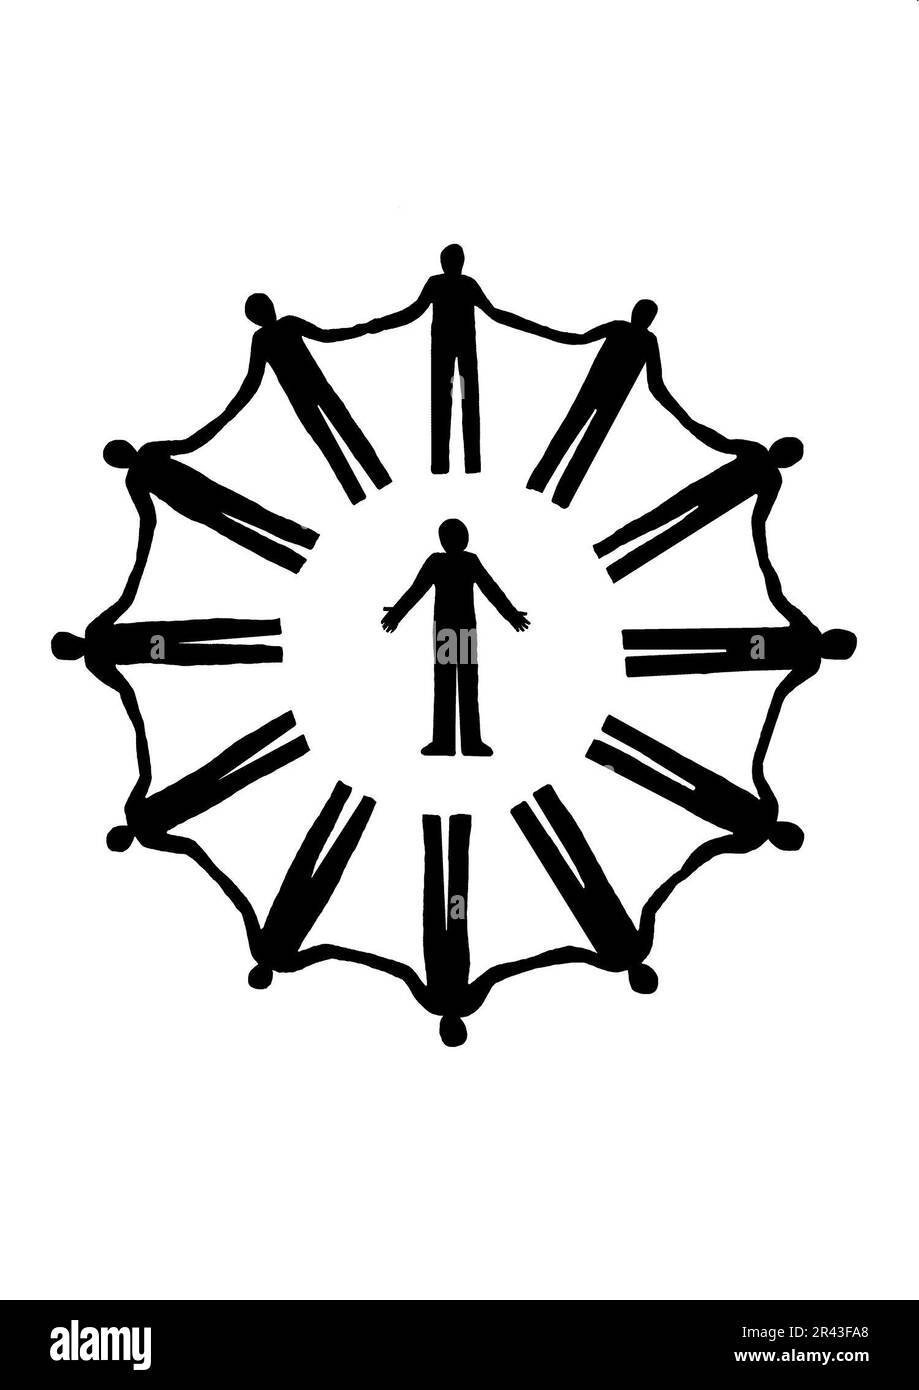 Illustrazione in bianco e nero di un singolo uomo circondato da un gruppo di uomini Foto Stock